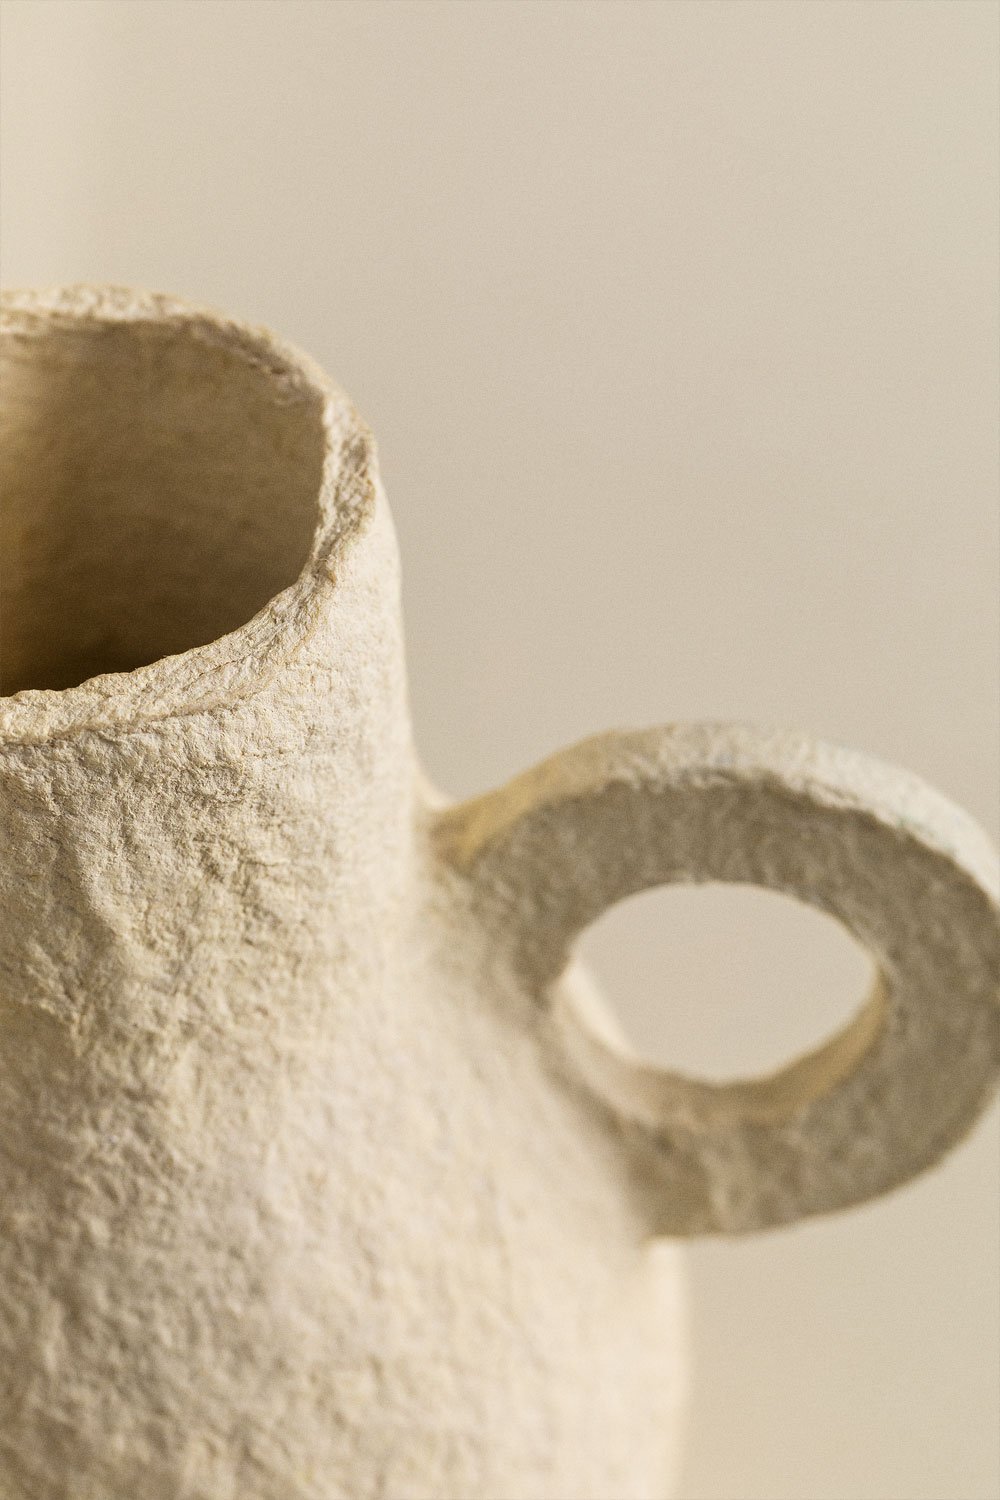 Paper Mache Pottery • Ultimate Paper Mache